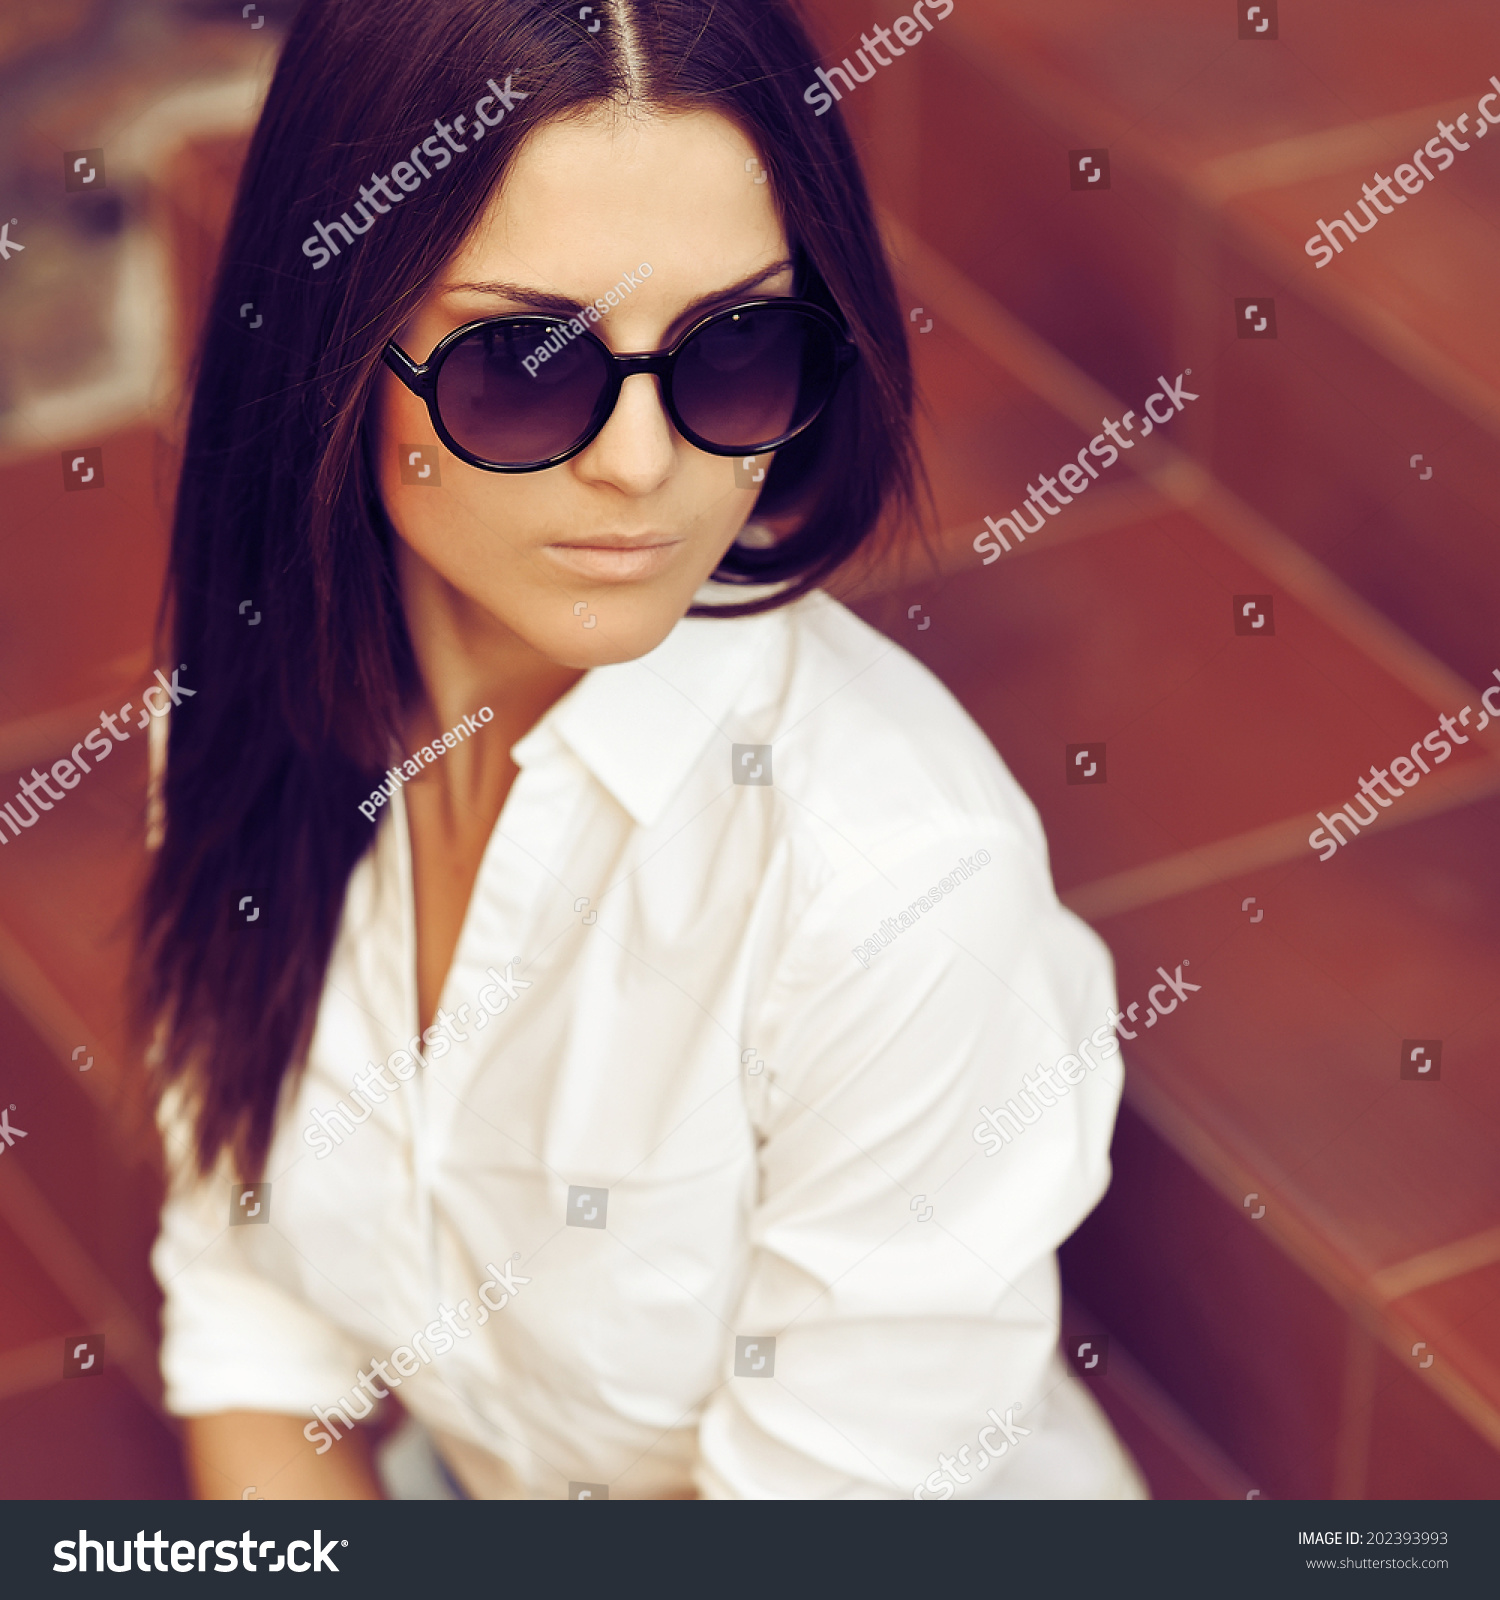 Fashion portrait of young pretty woman in sunglasses #202393993